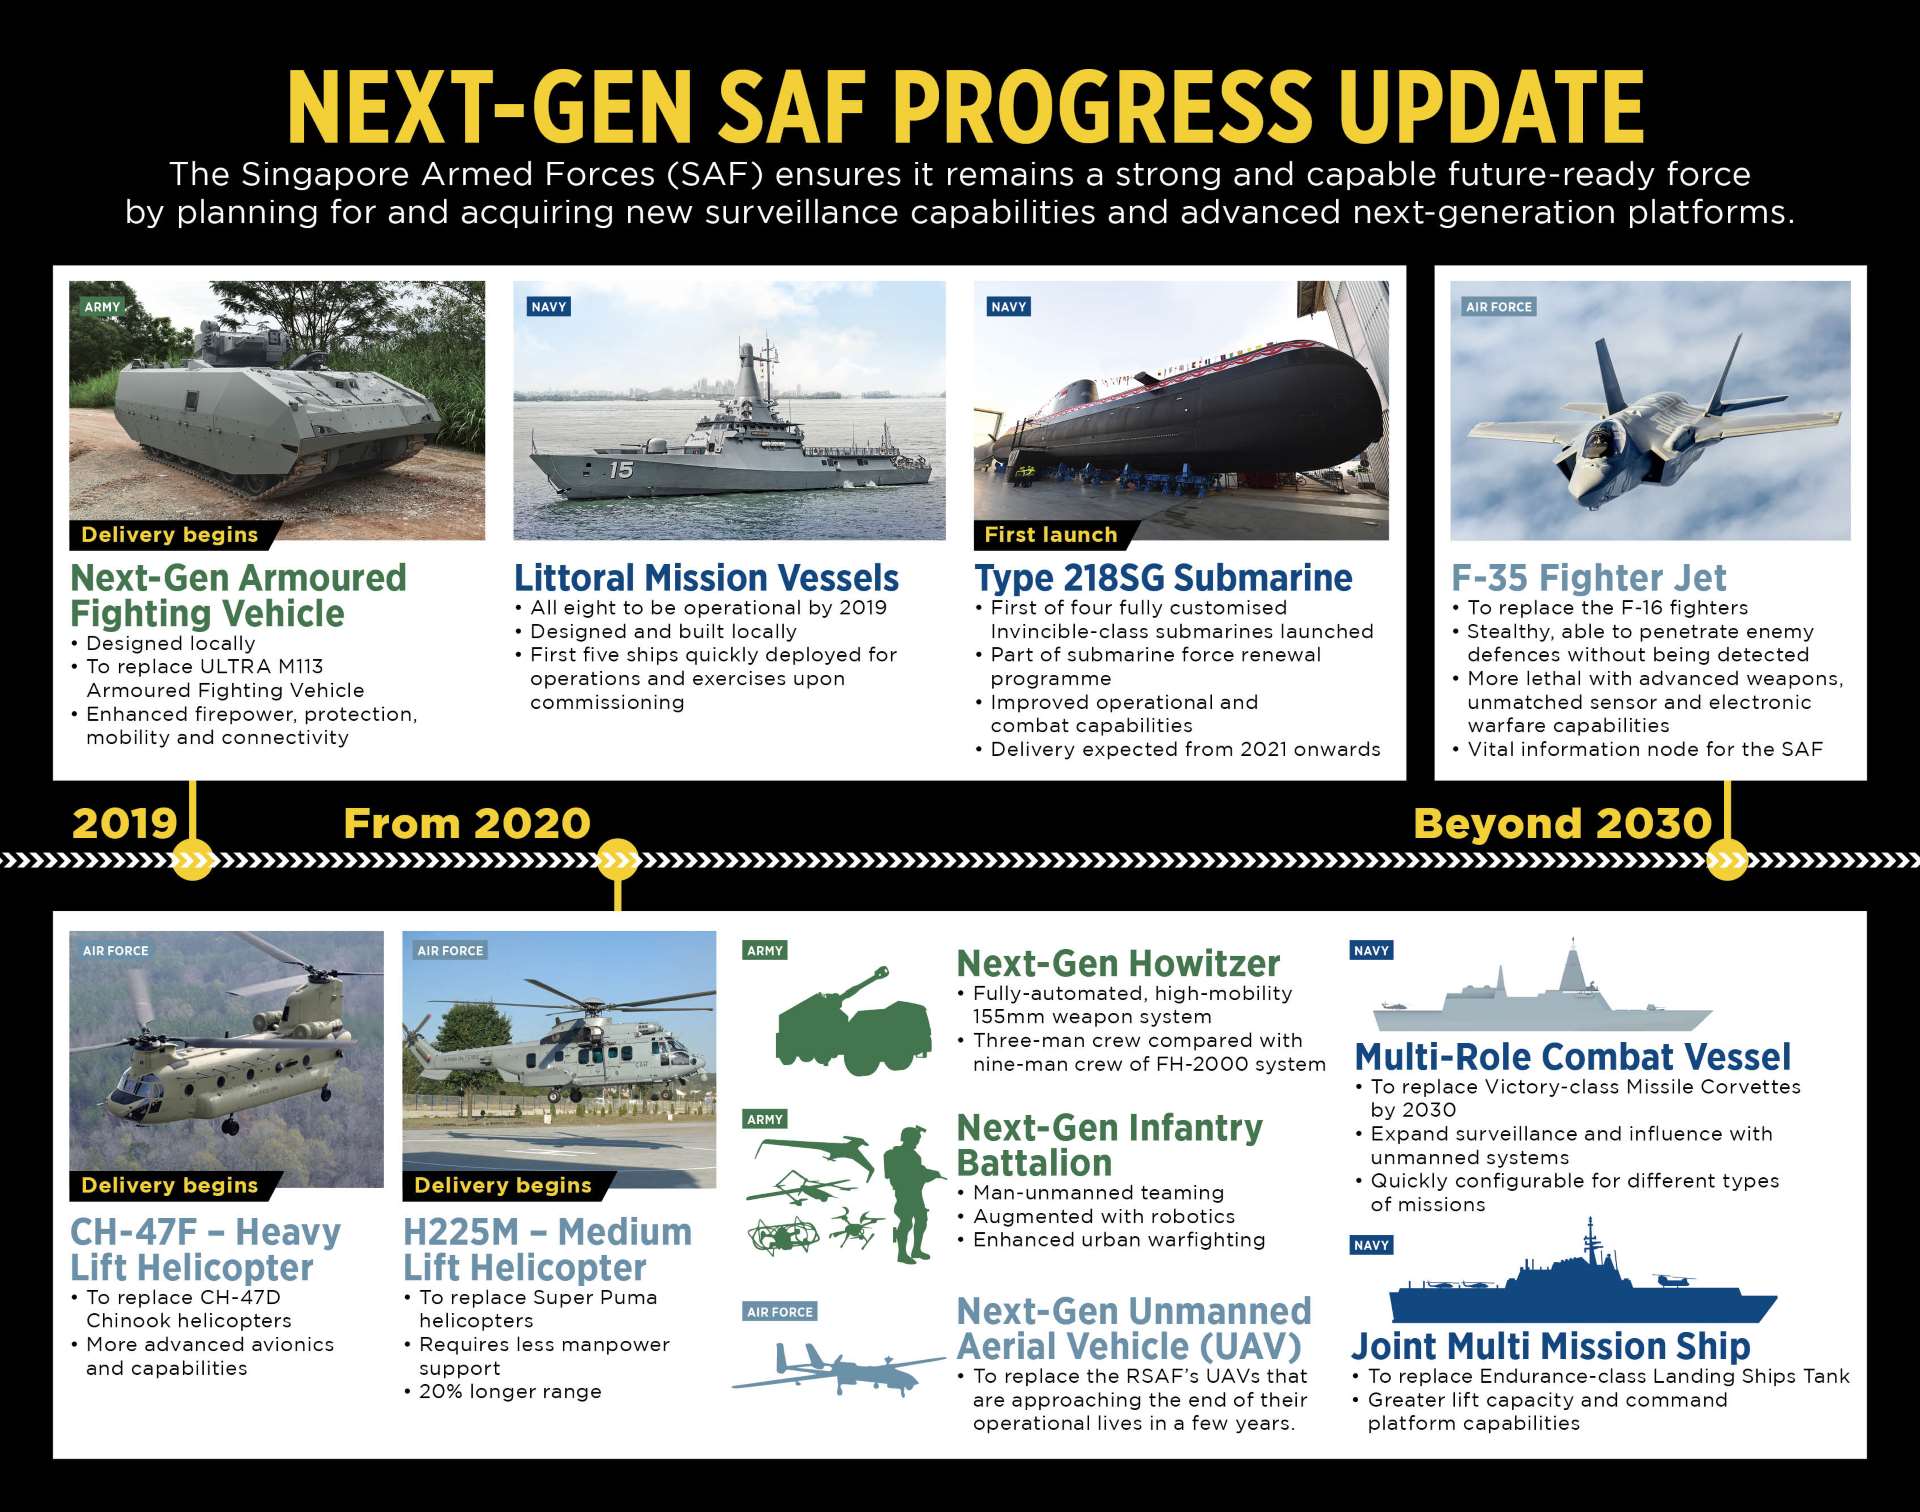 Next-Gen SAF Progress Update